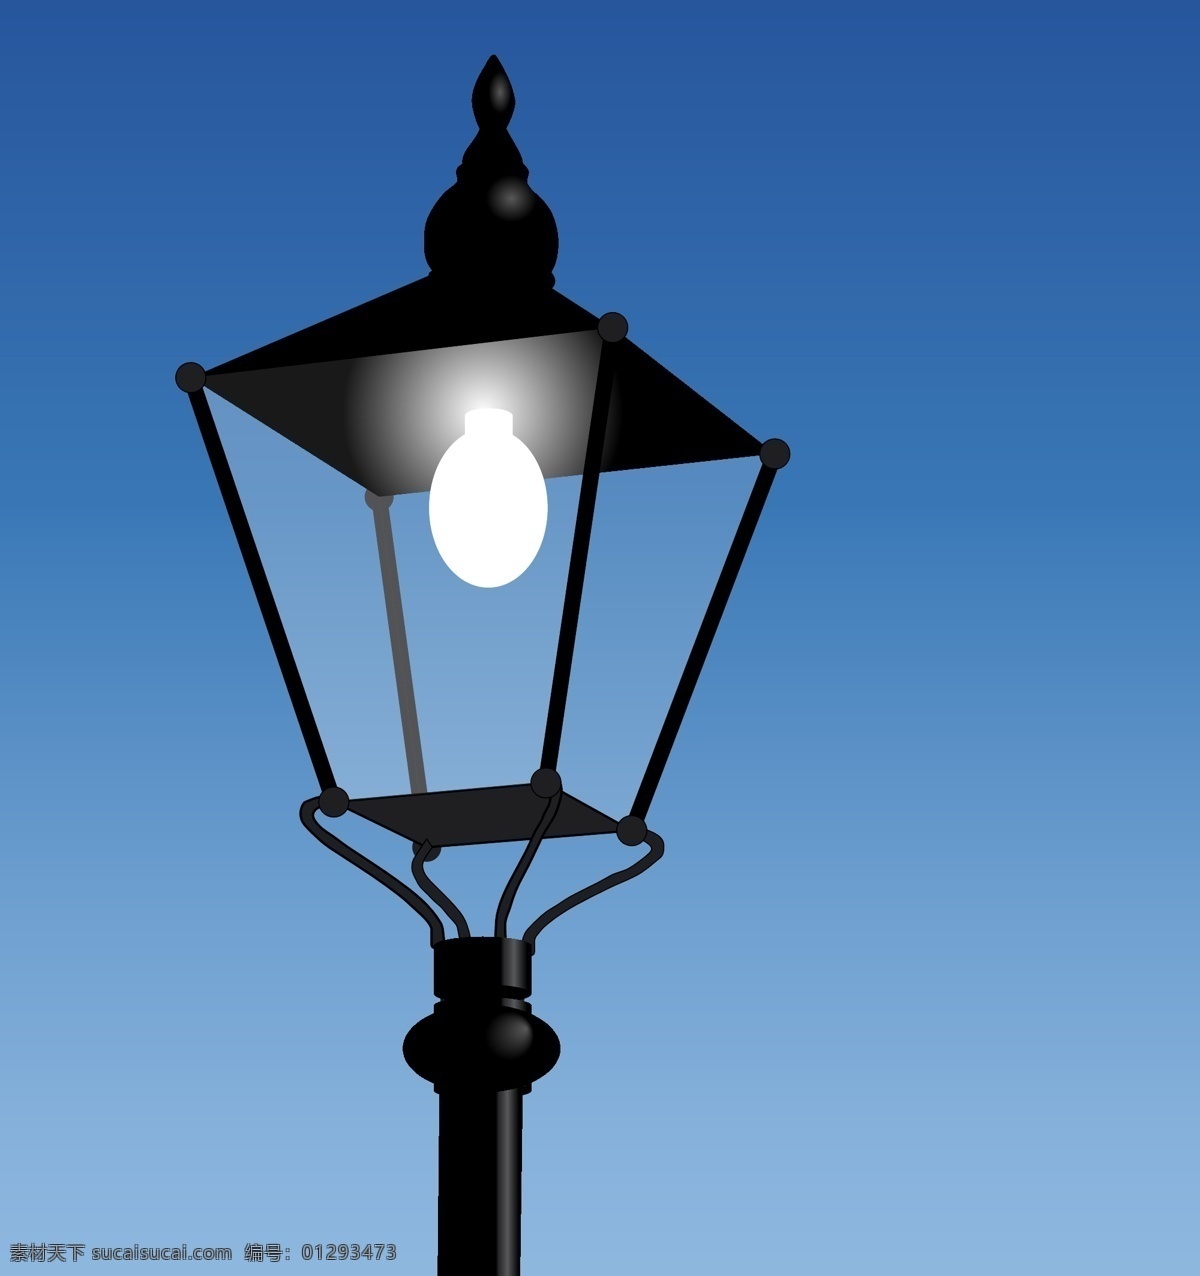 路灯矢量素材 灯笼 路灯 照亮 灯 光 夜 路 闪耀 街 生活百科 生活用品